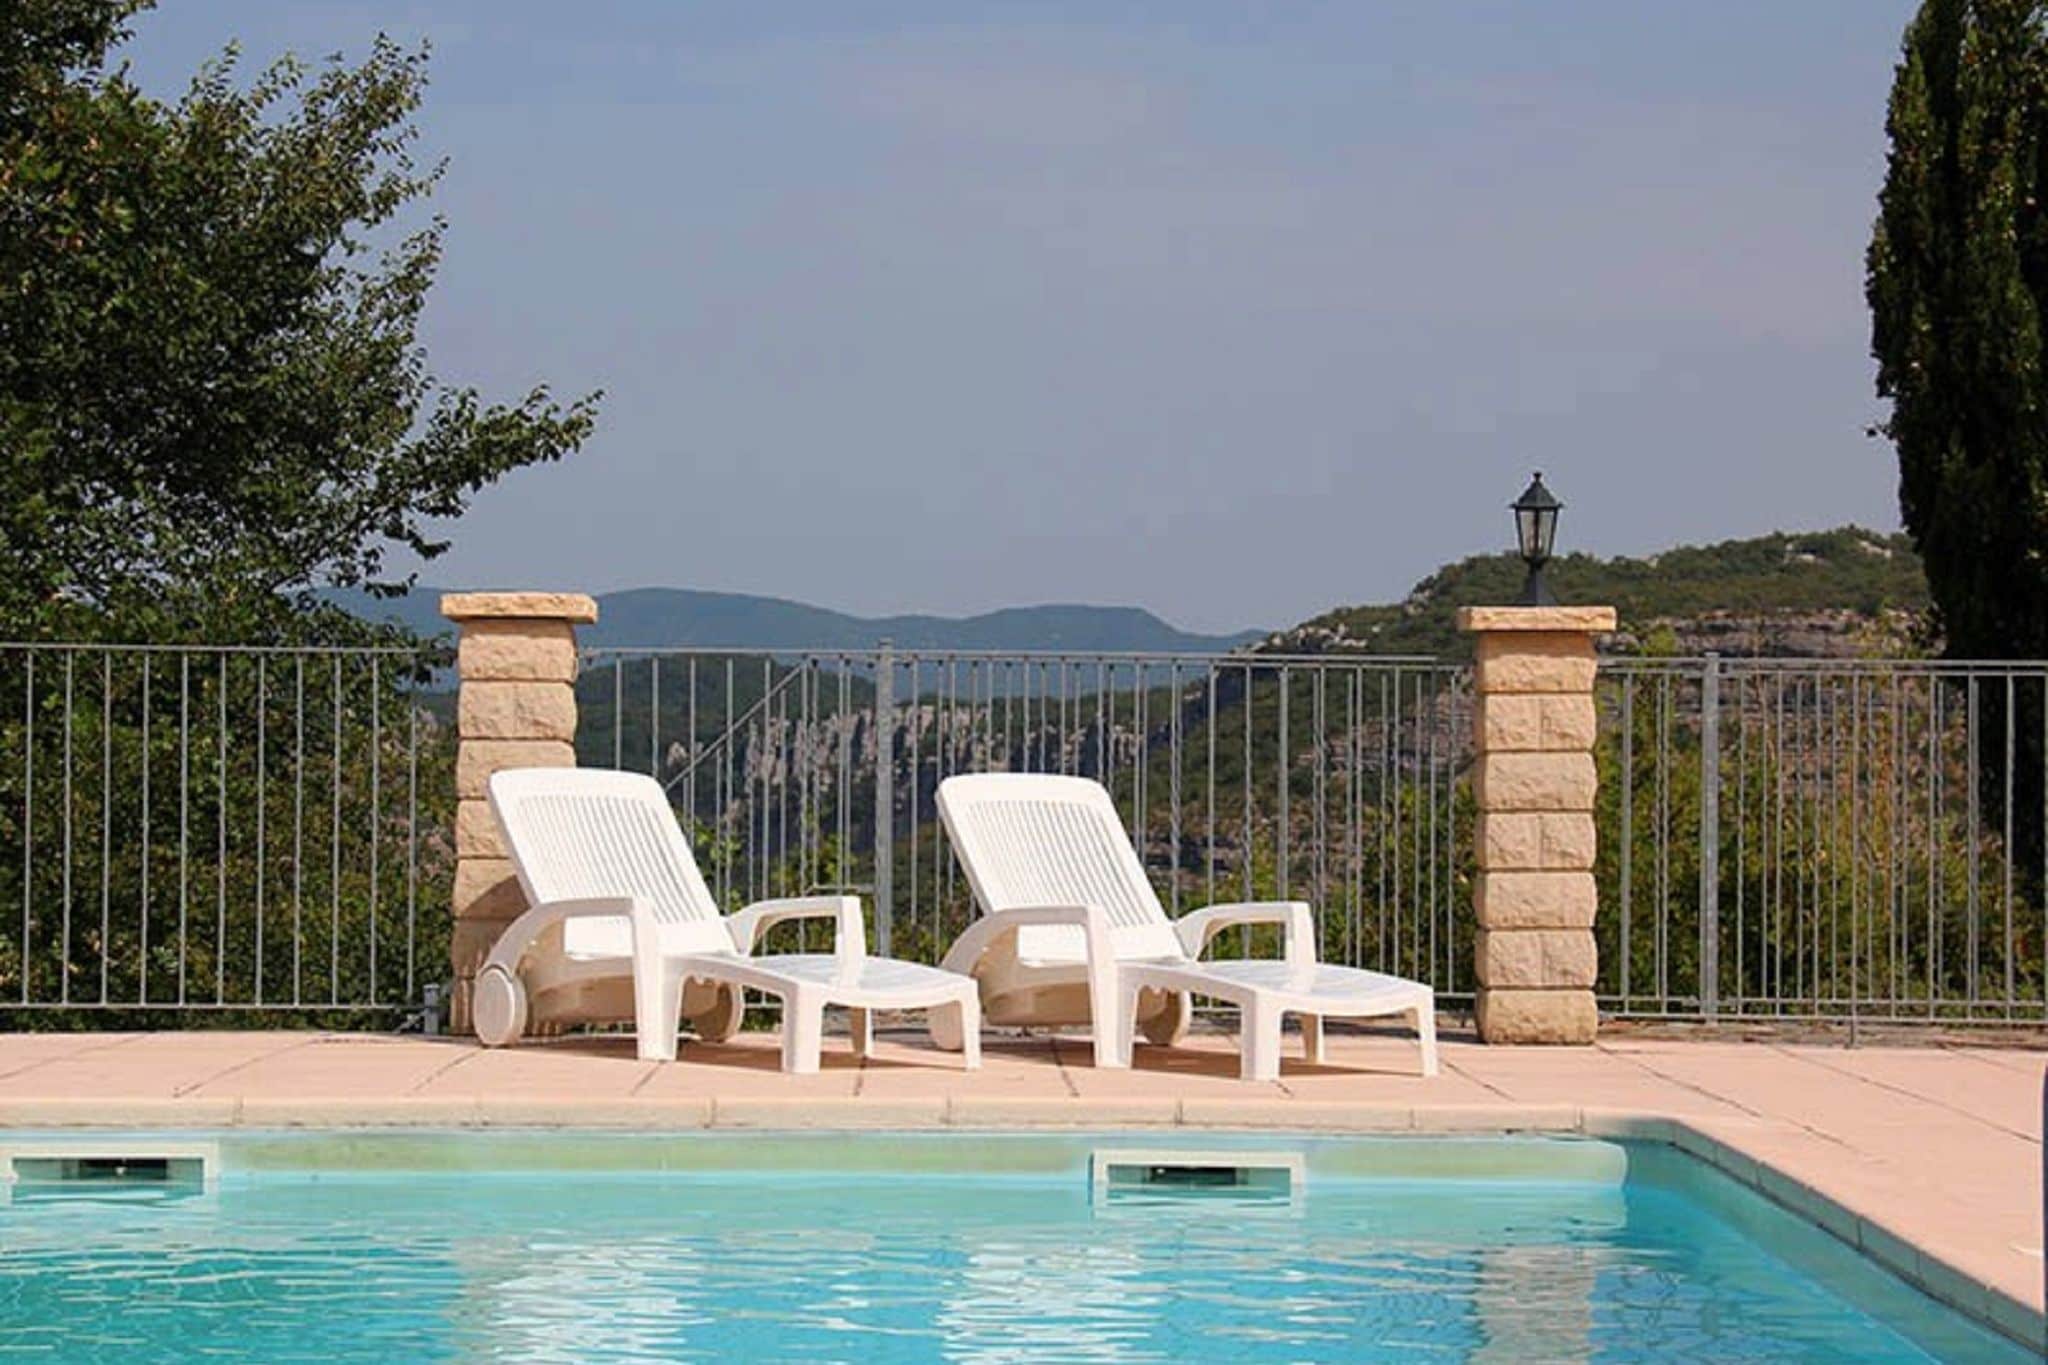 Maison de vacances tranquille aux Vans, Ardèche avec piscine